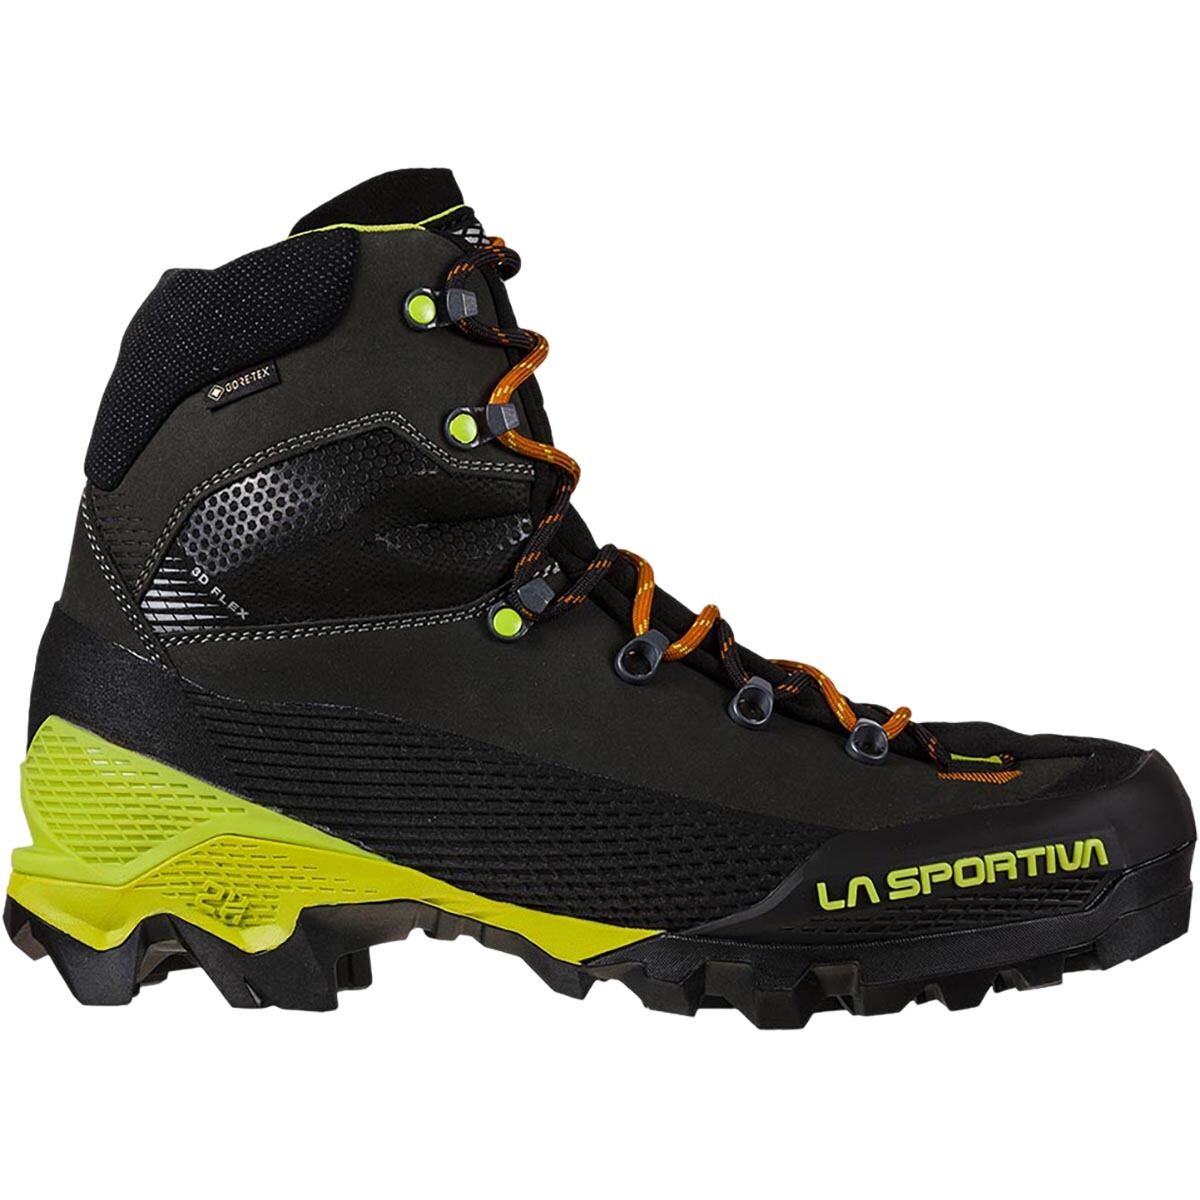 La Sportiva Aequilibrium LT GTX Mountaineering Boot - Men's